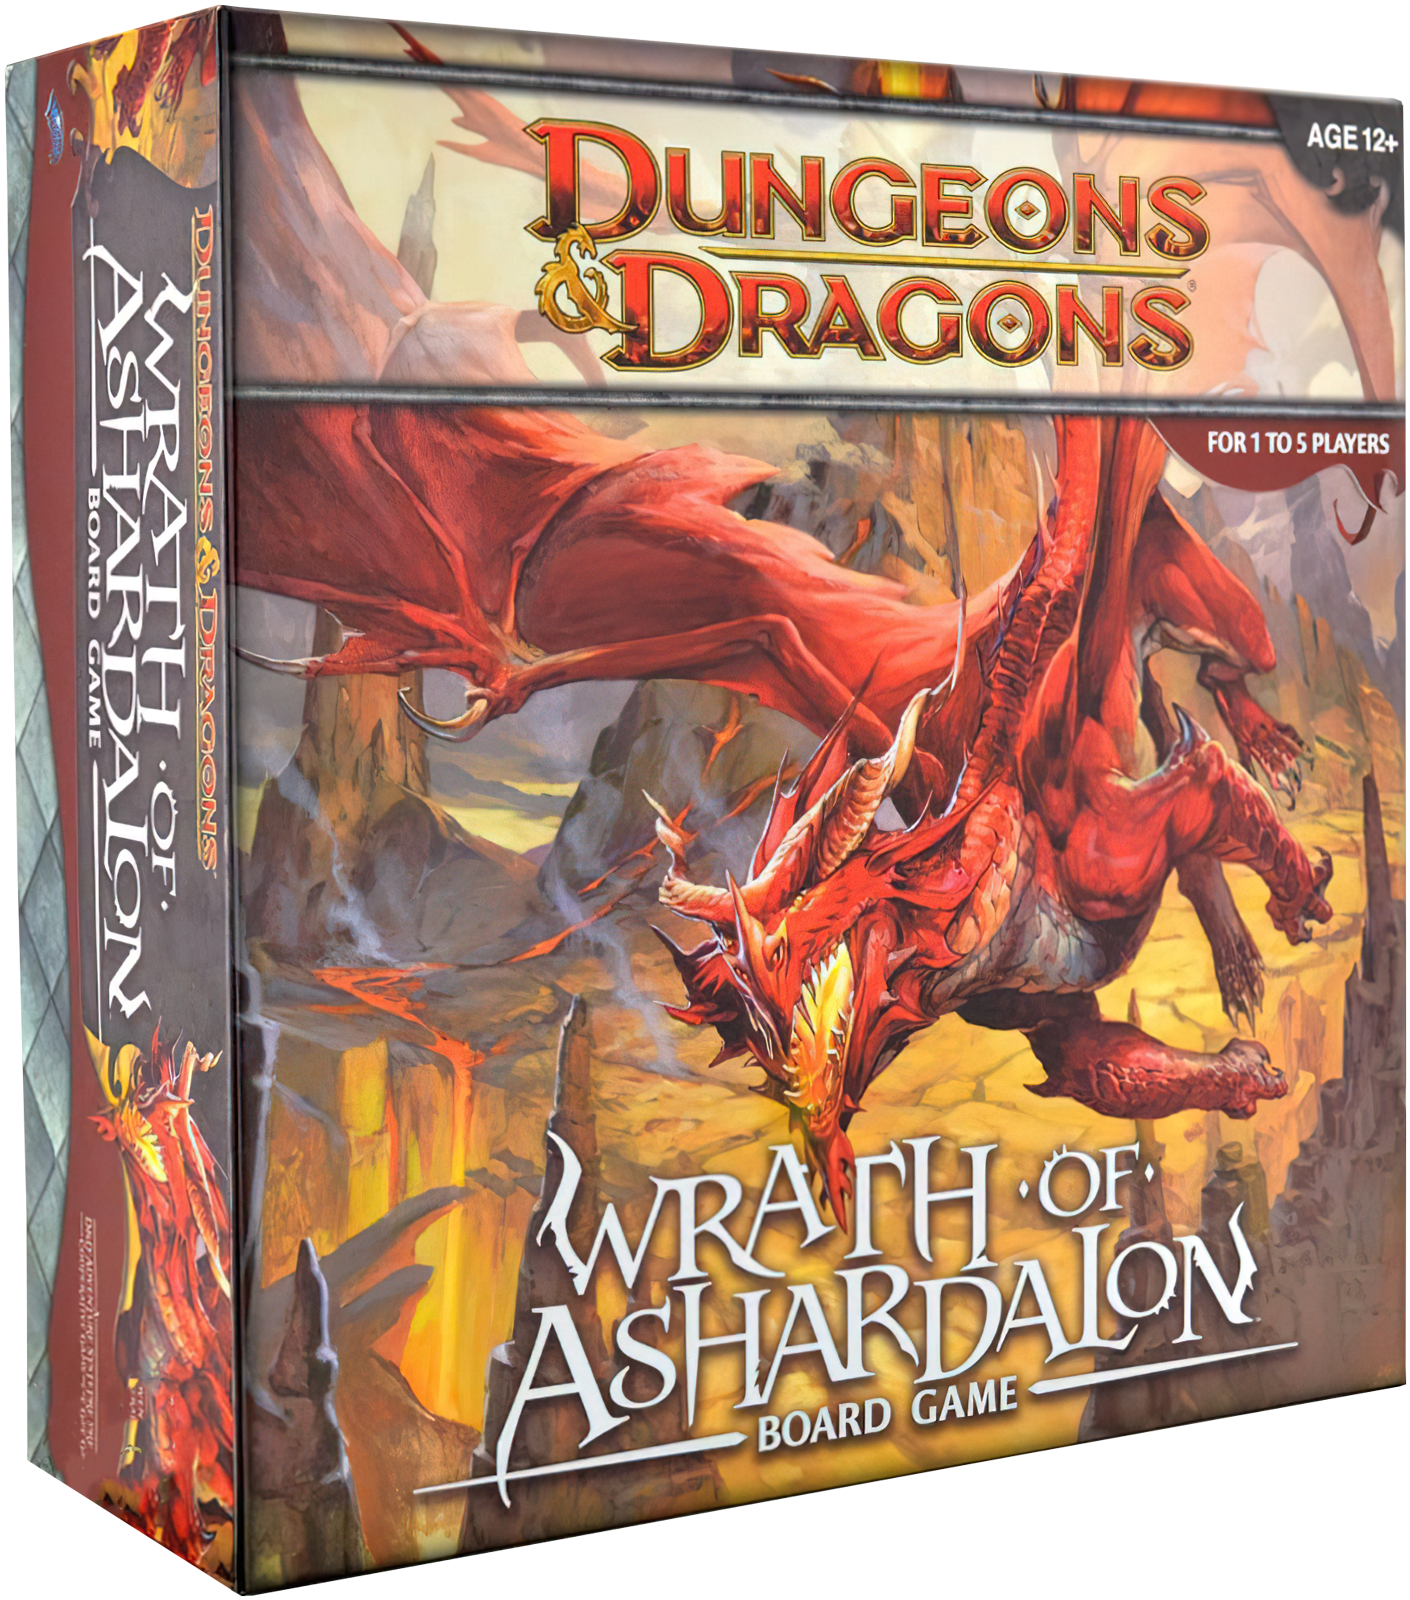 Dungeons & Dragons: Wrath of Ashardalon Board game. Гнев Ашардалона. Подземелья и драконы: гнев Бога-дракона. Dungeons & Dragons отзывы. Игра подземелья правила